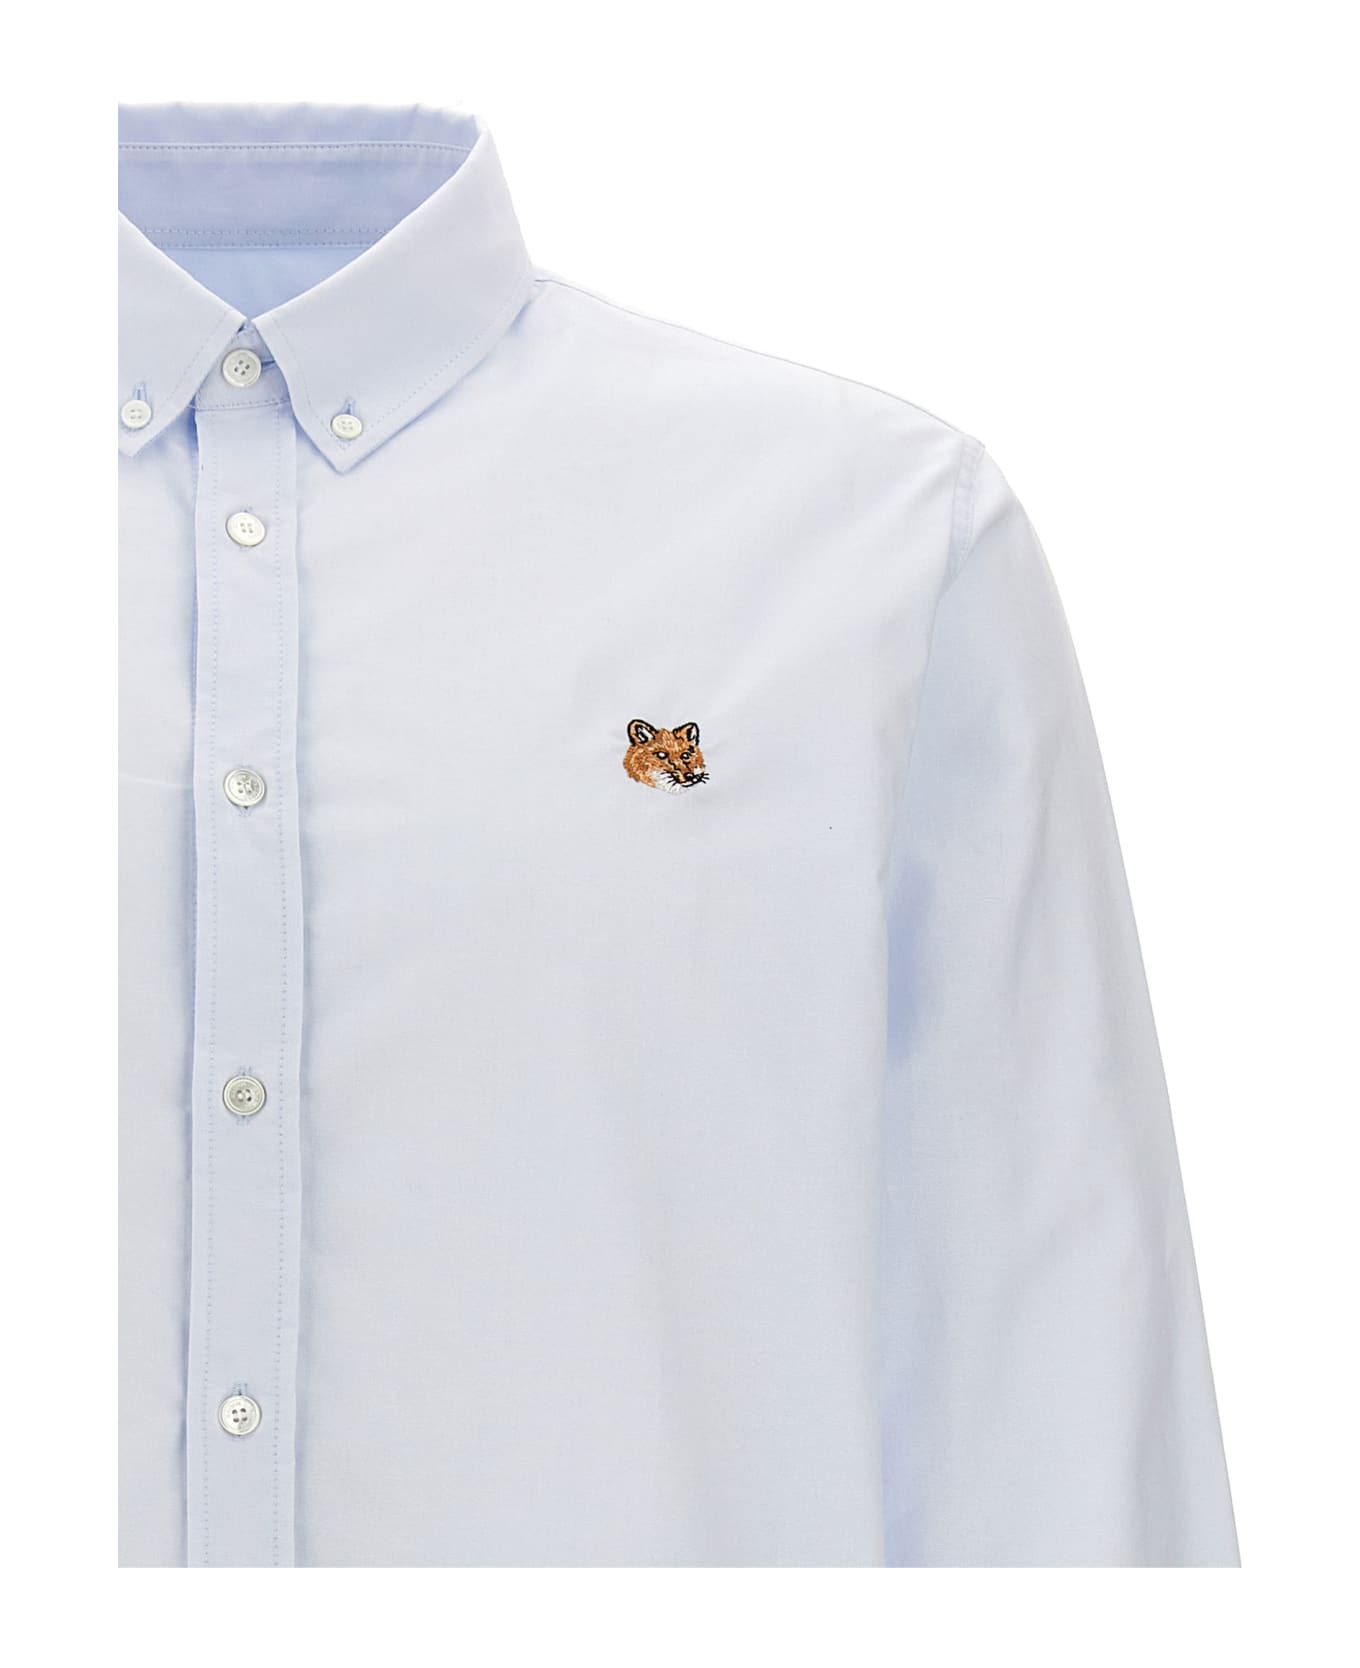 Maison Kitsuné 'mini Fox Head Classic' Shirt - Light Blue シャツ